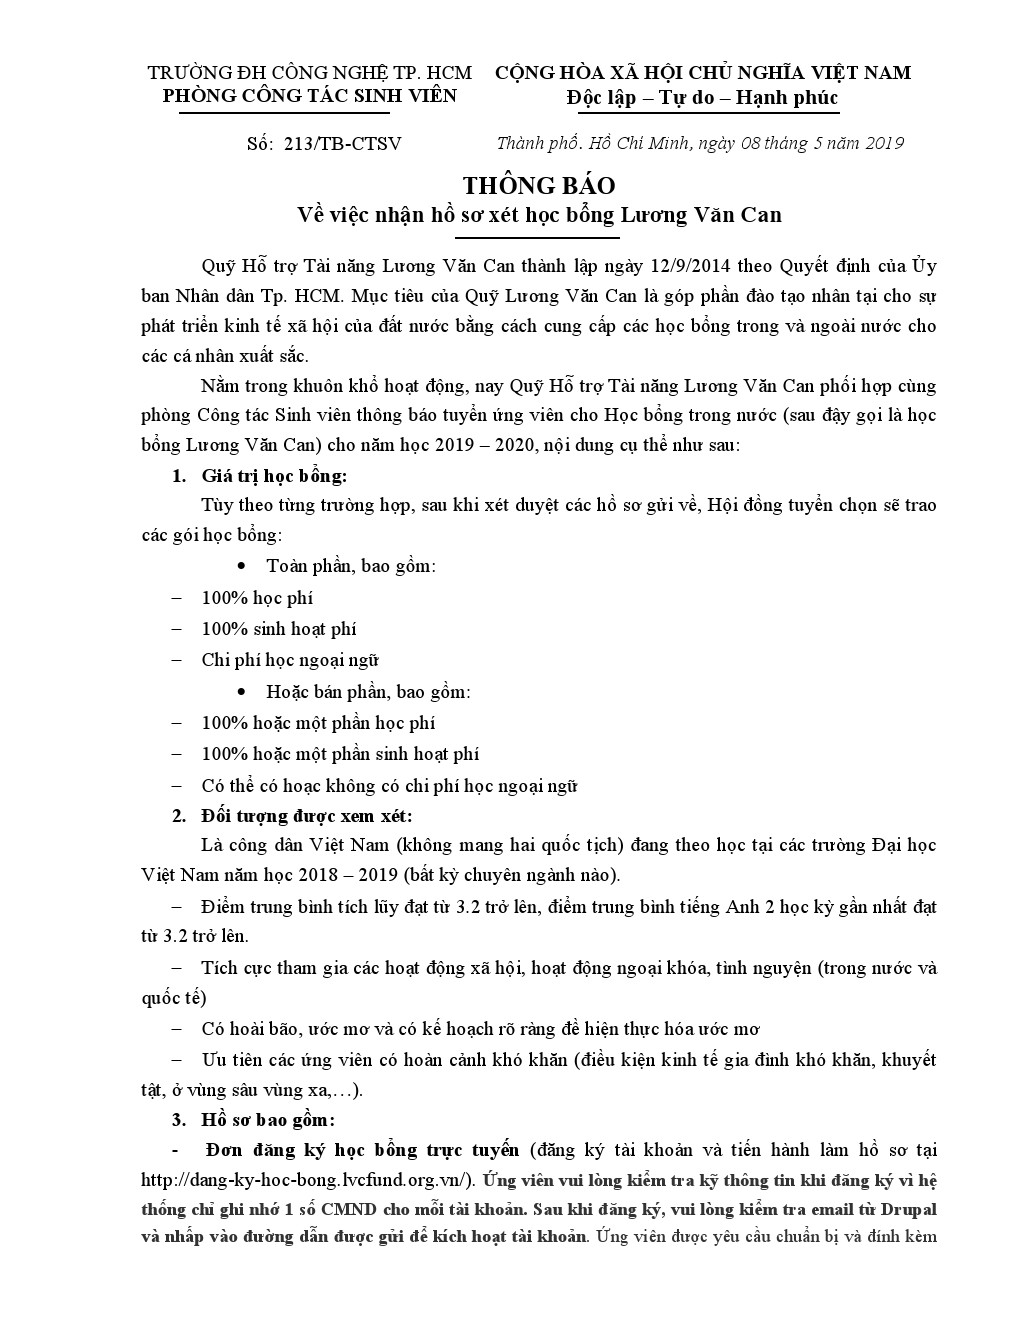 Thông báo 213/TB-CTSV về việc tiếp nhận hồ sơ xét học bổng Lương Văn Can 2